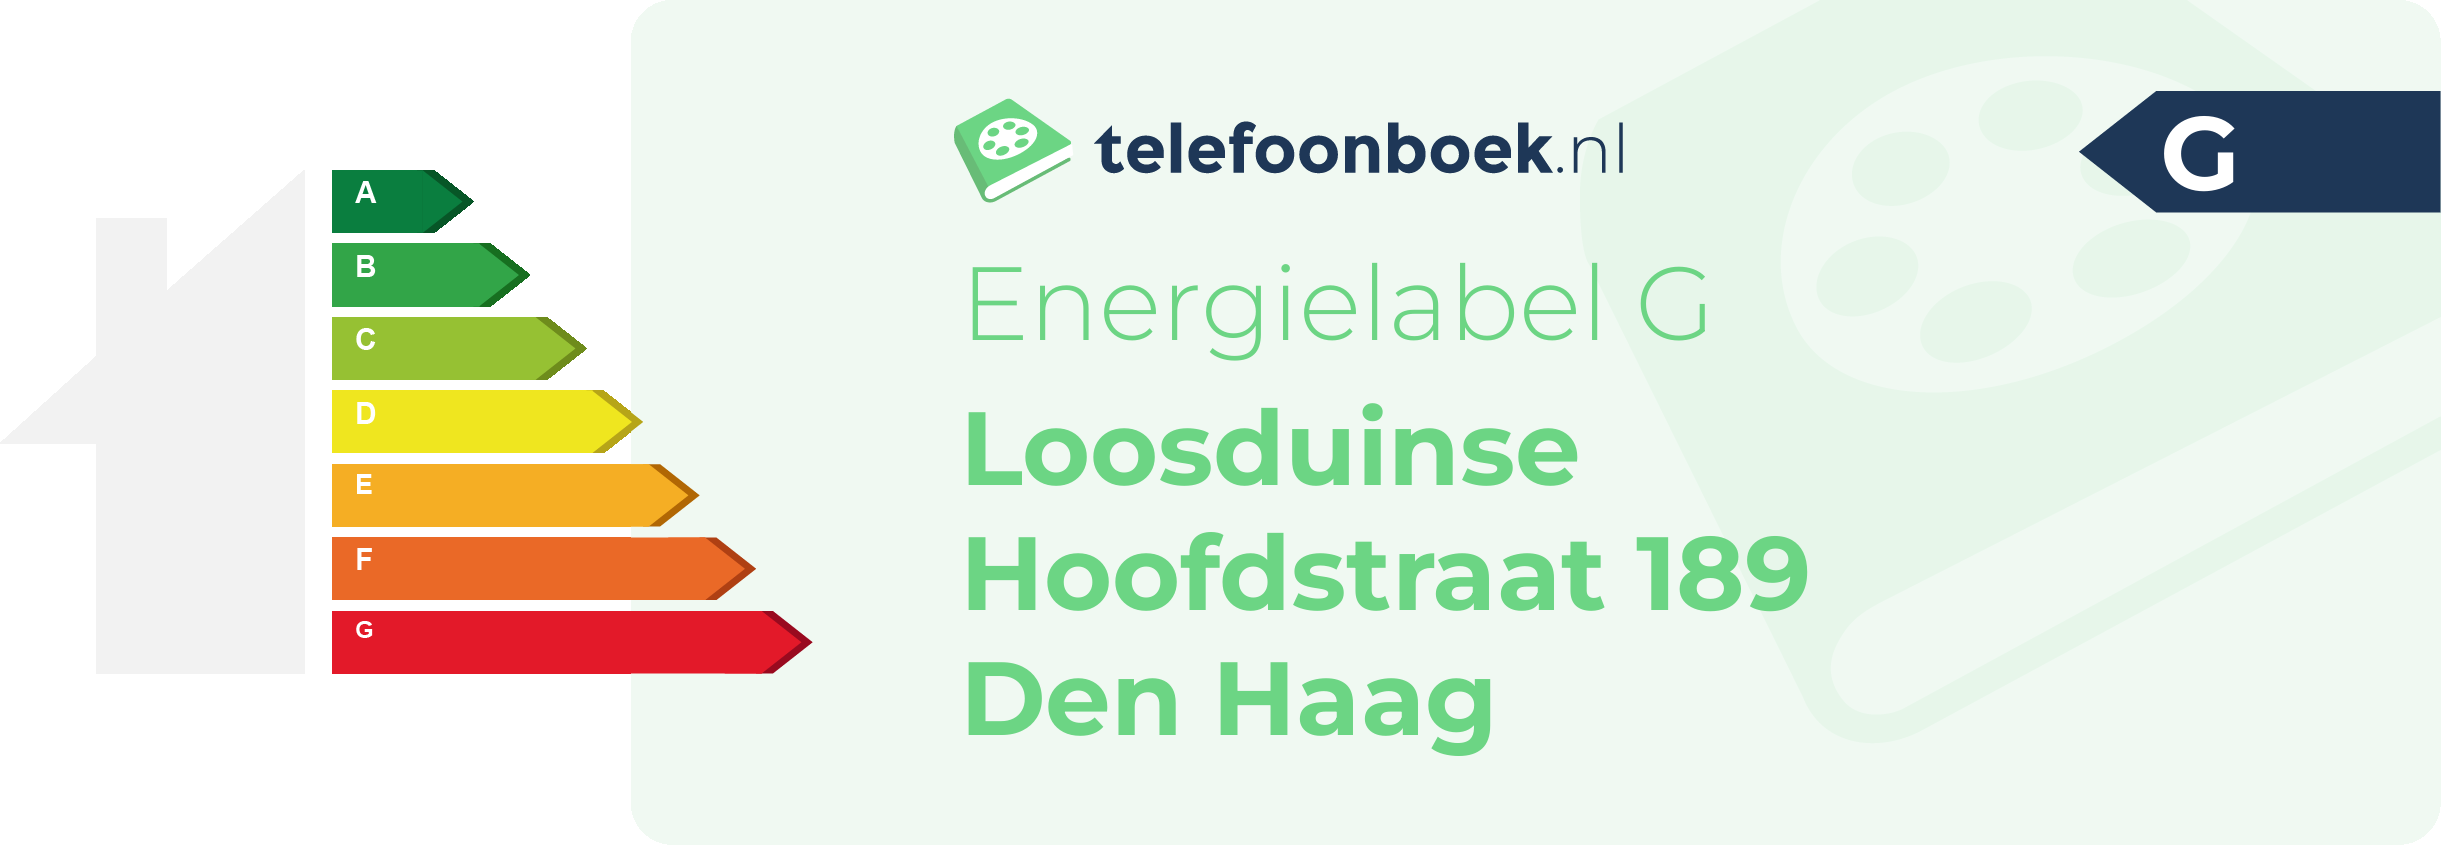 Energielabel Loosduinse Hoofdstraat 189 Den Haag